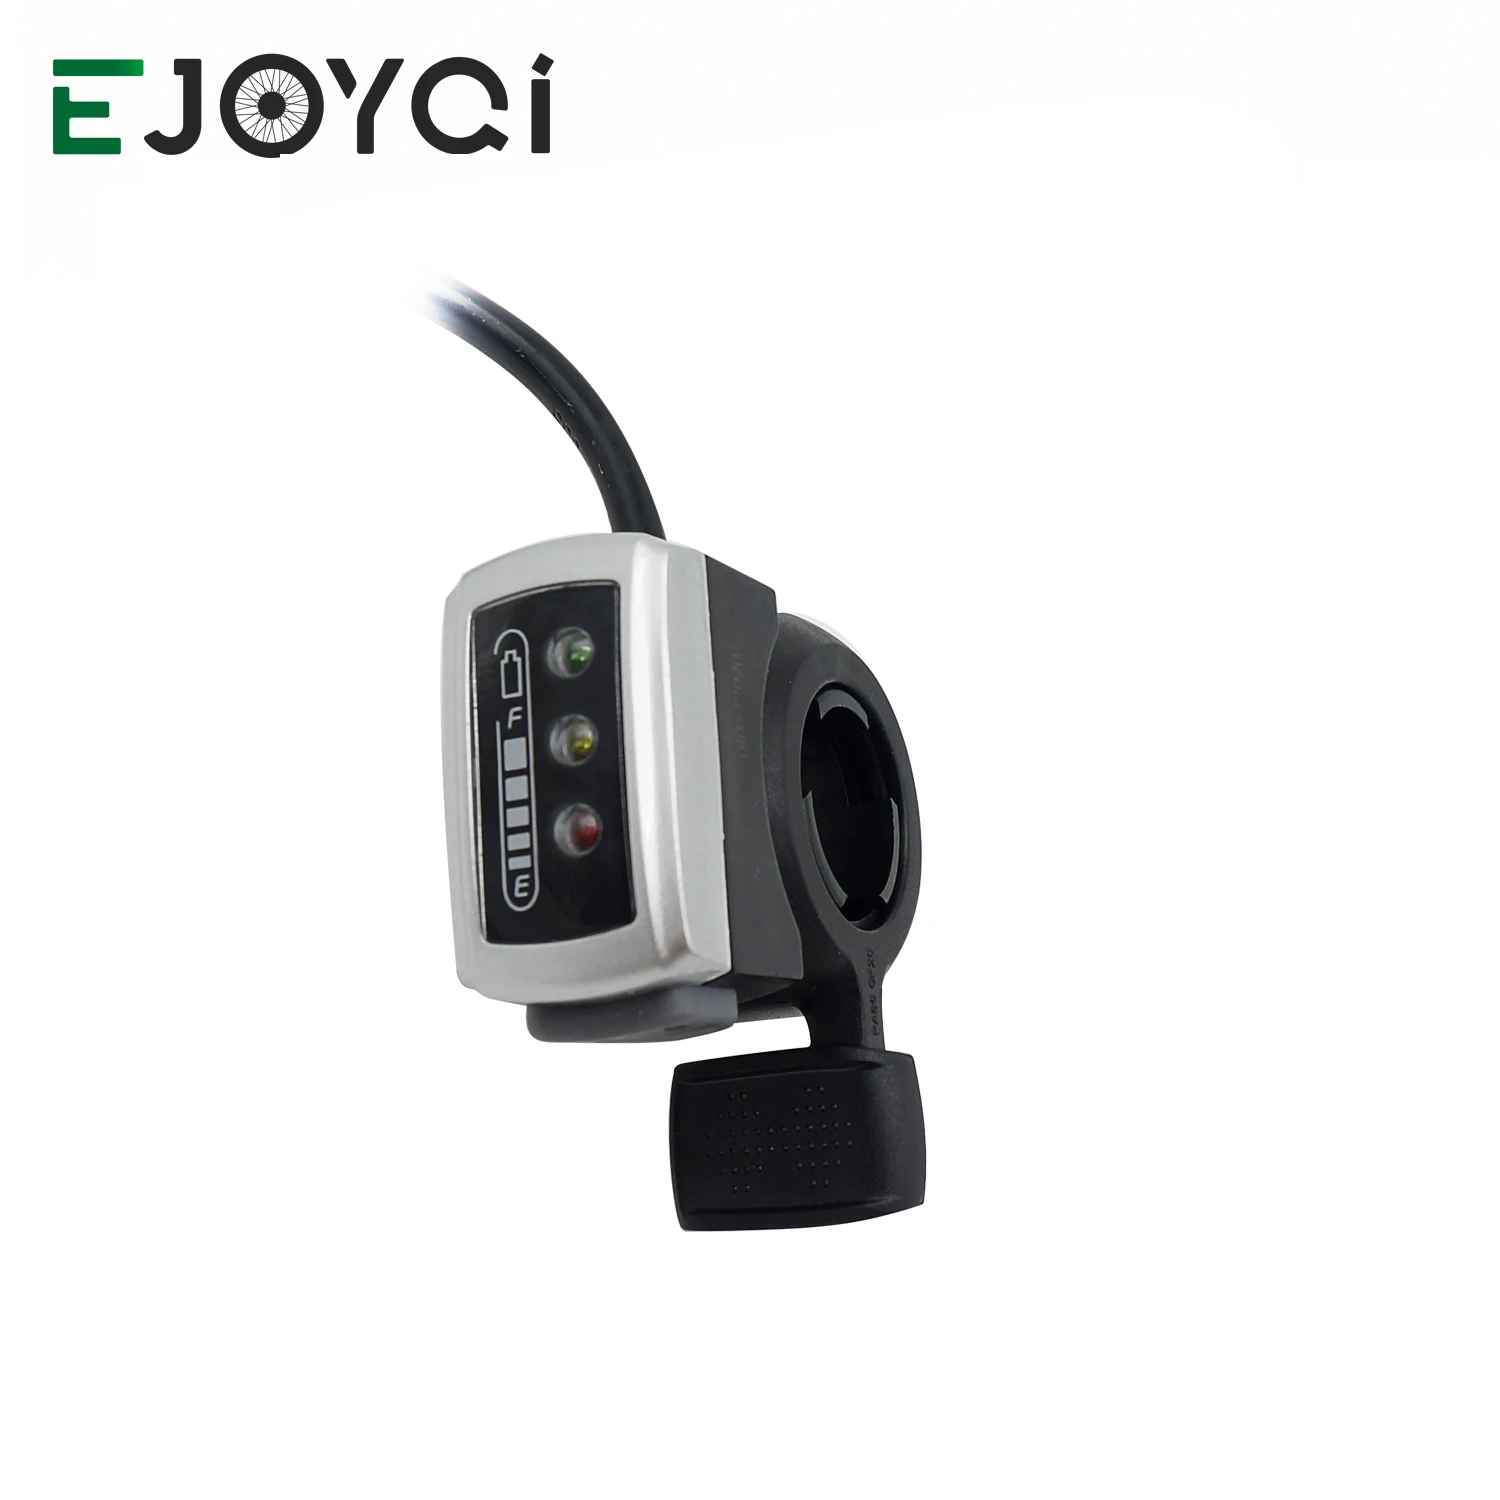 EJOYQI детали для электровелосипеда 106DX Thumb дроссельная заслонка 36 В 48 В контроль скорости 6 проводов дроссельная заслонка с переключателем ВКЛ/ВЫКЛ для электровелосипеда